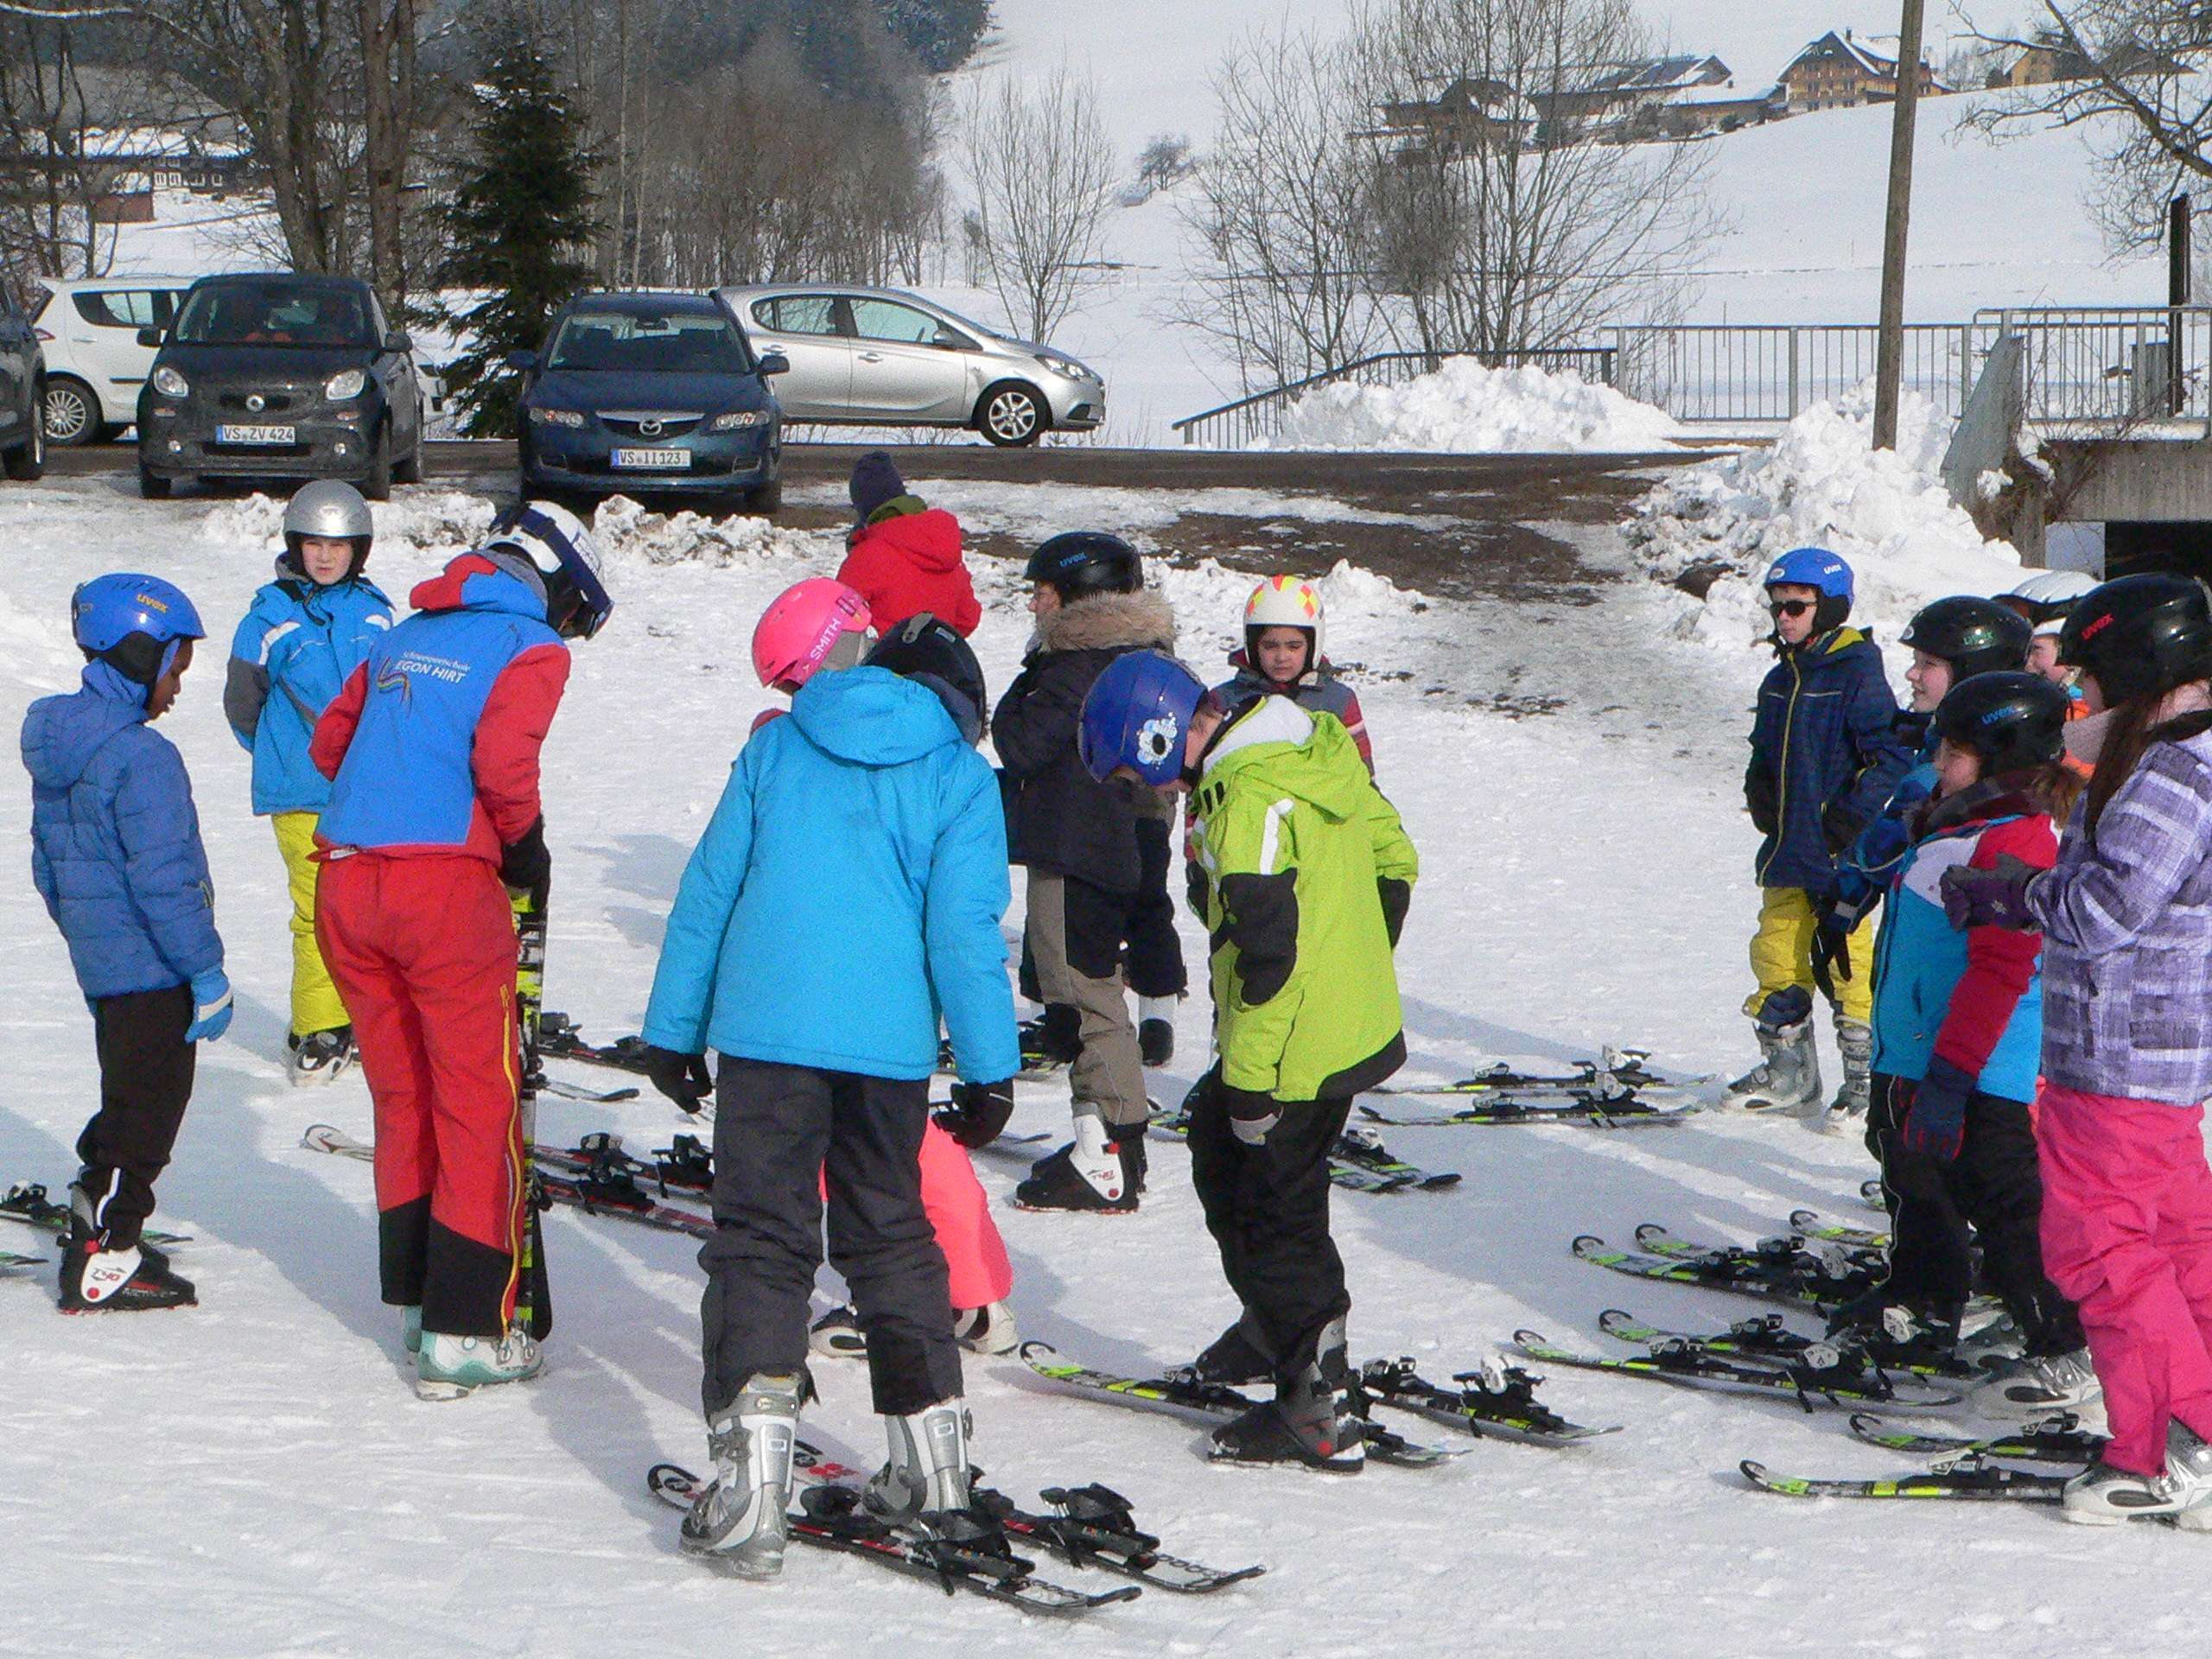 
    
            
                    Fünftklässler machen sich mit dem Sportgerät Ski vertraut
                
        
